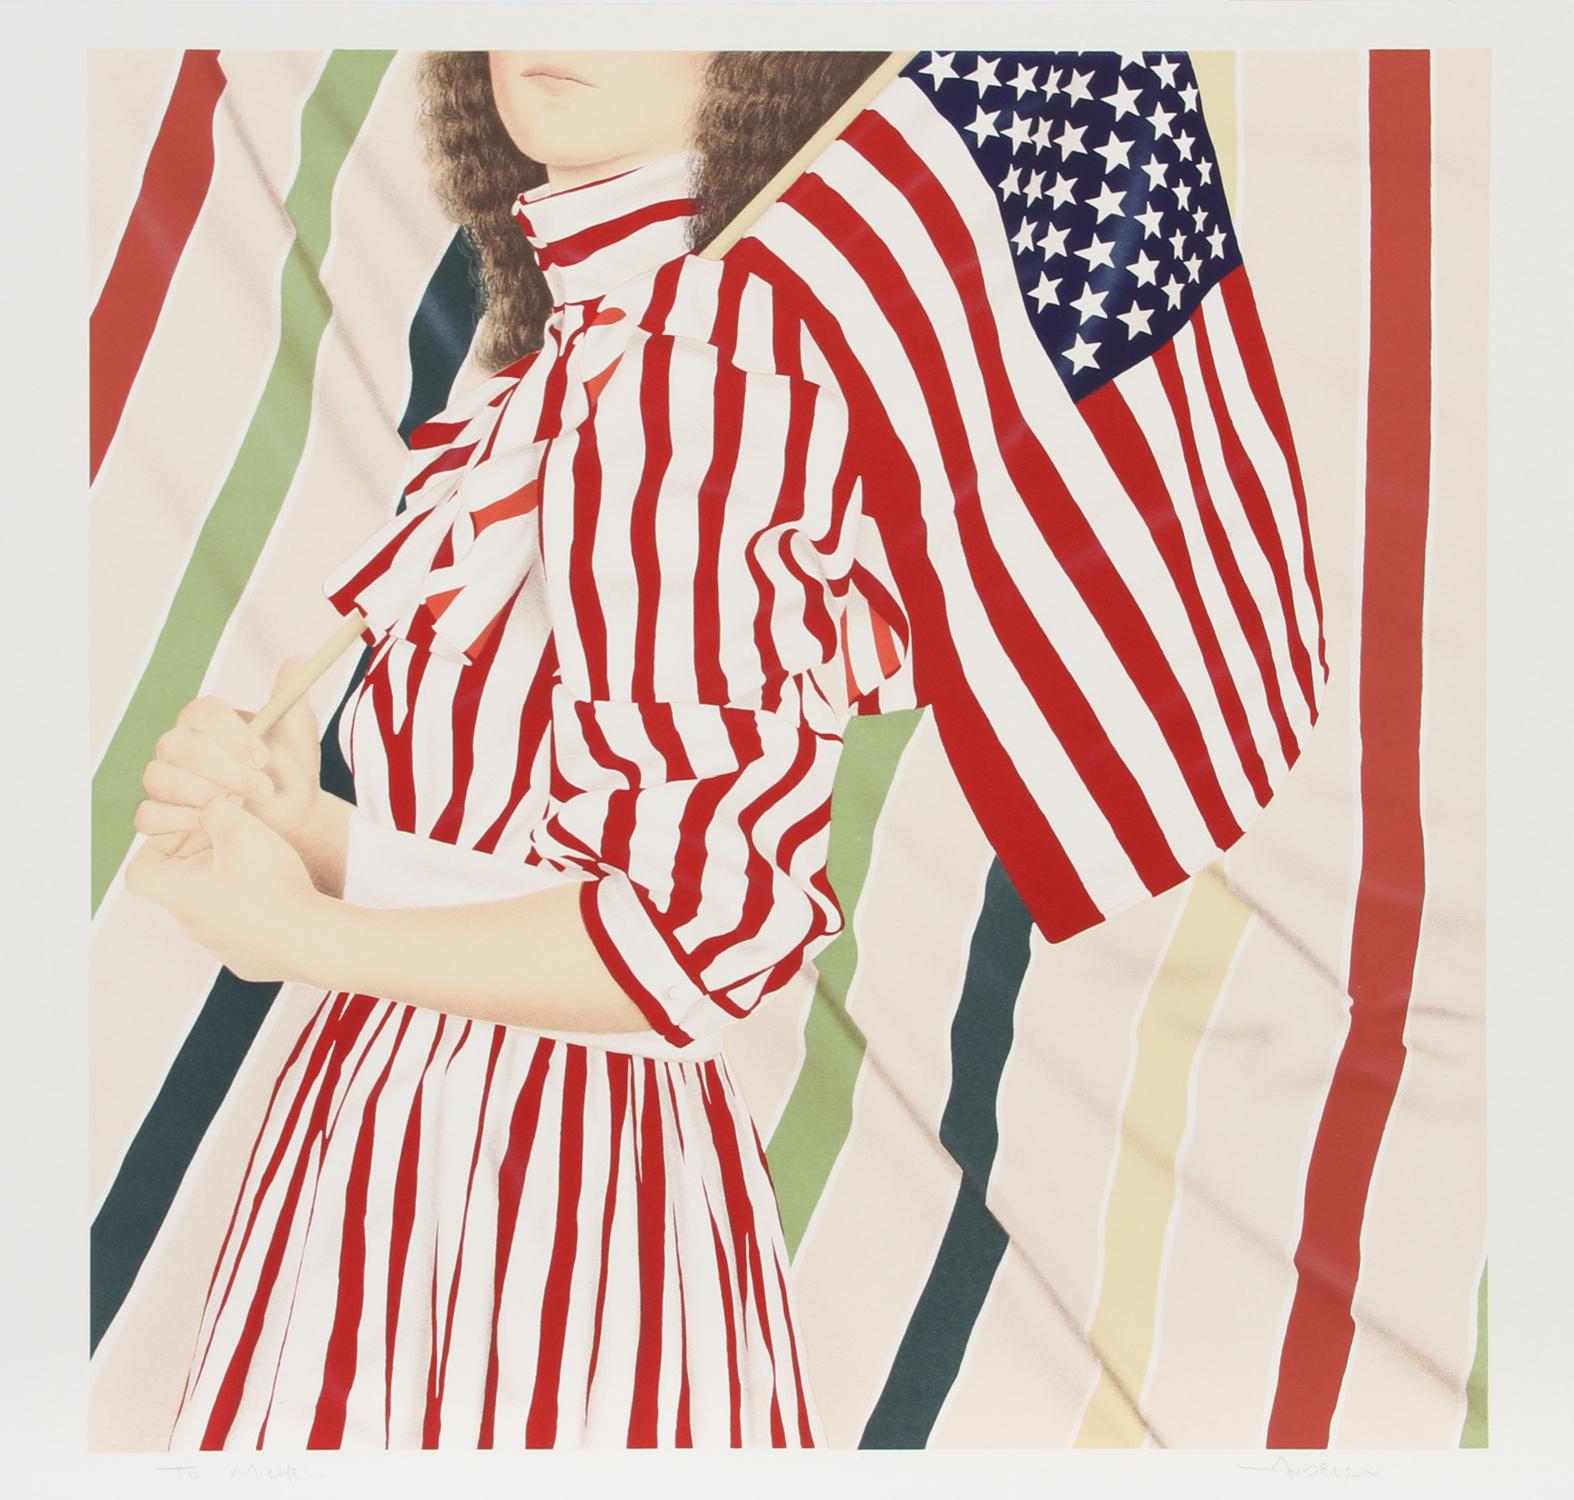 Artiste : Robert Anderson, américain (1945 - 2010)
Titre : American Girl
Année : vers 1979
Medium : Lithographie, signé au crayon
Edition : 300
Taille de l'image : 23.5 x 23.5 pouces
Taille : 26 in. x 29 in. (66,04 cm x 73,66 cm)